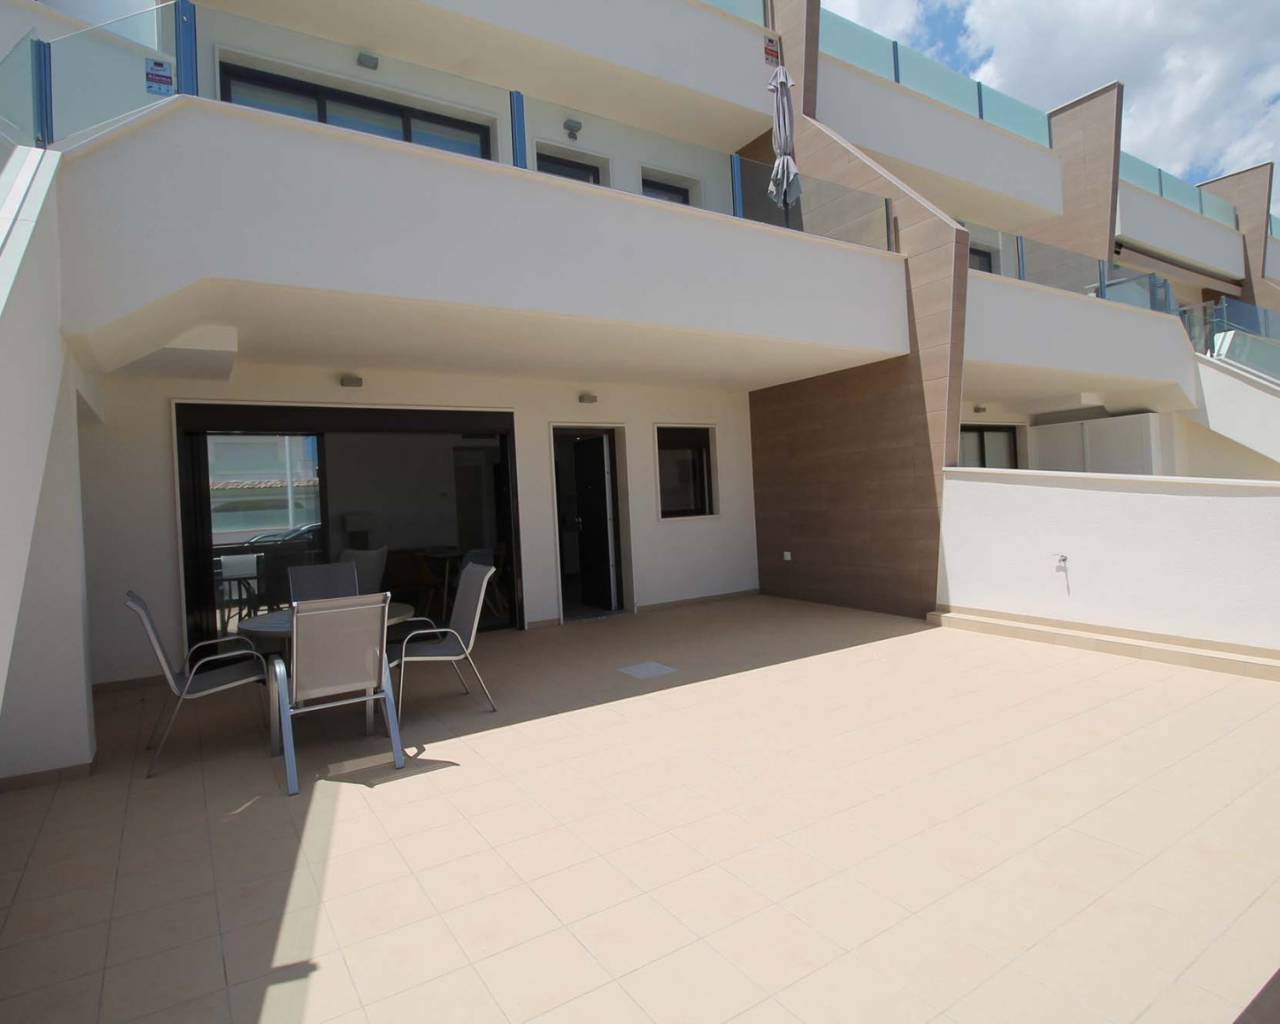 Appartement à vendre près de la plage de Lo Pagán à Murcie 